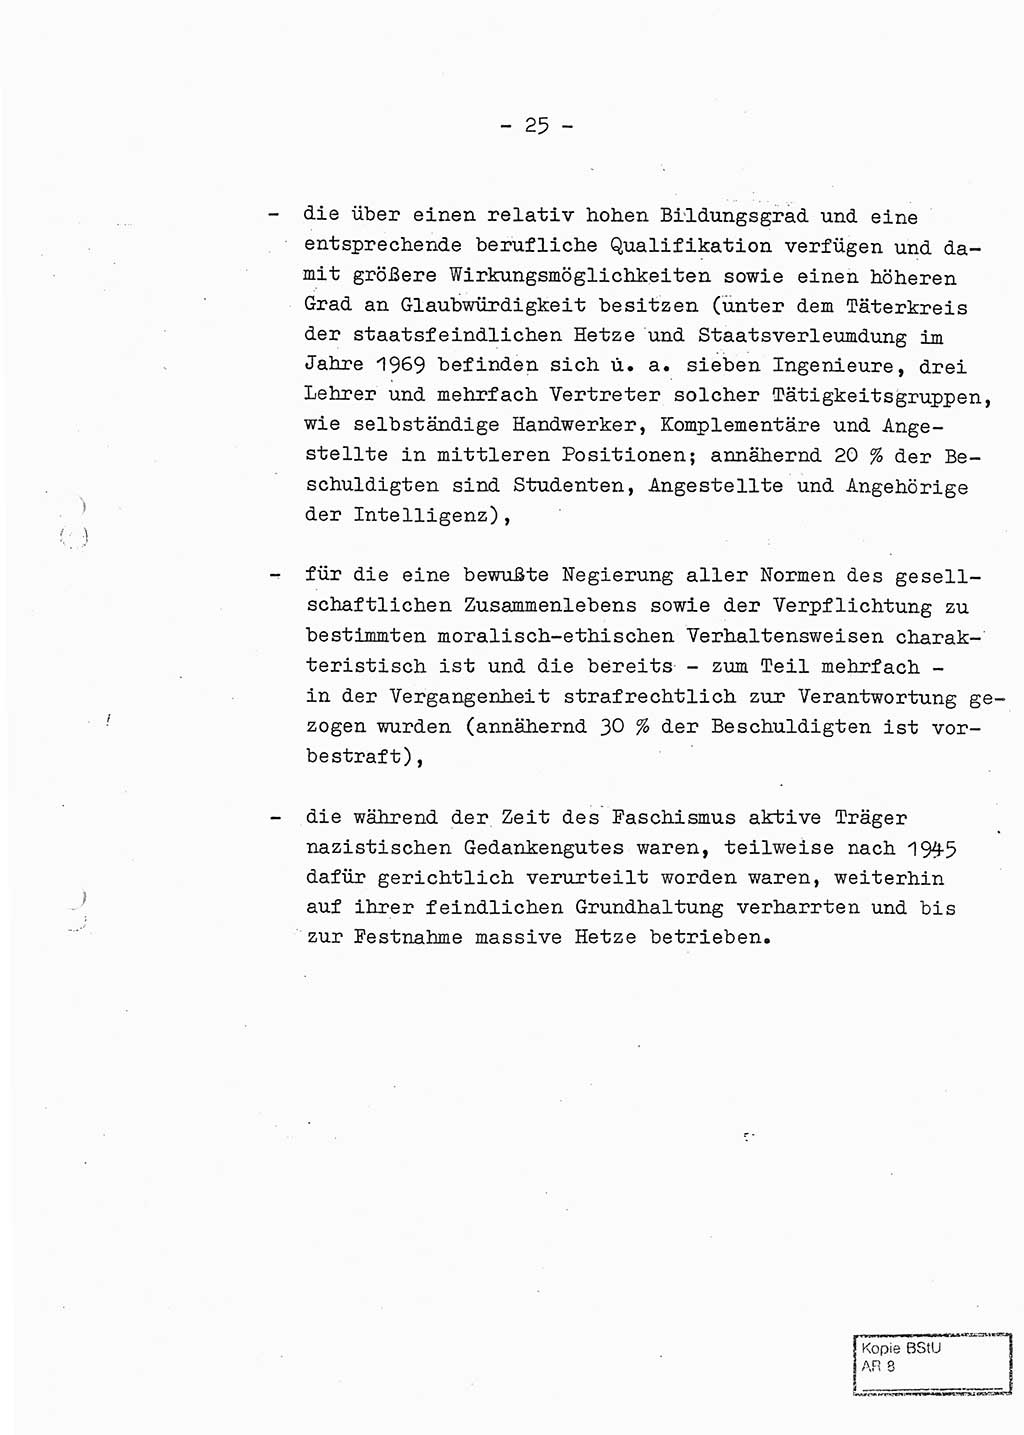 Jahresbericht der Hauptabteilung (HA) Ⅸ 1969 des Ministeriums für Staatssicherheit (MfS) der Deutschen Demokratischen Republik (DDR), Berlin 1970, Seite 25 (J.-Ber. MfS DDR HA Ⅸ /69 1970, S. 25)